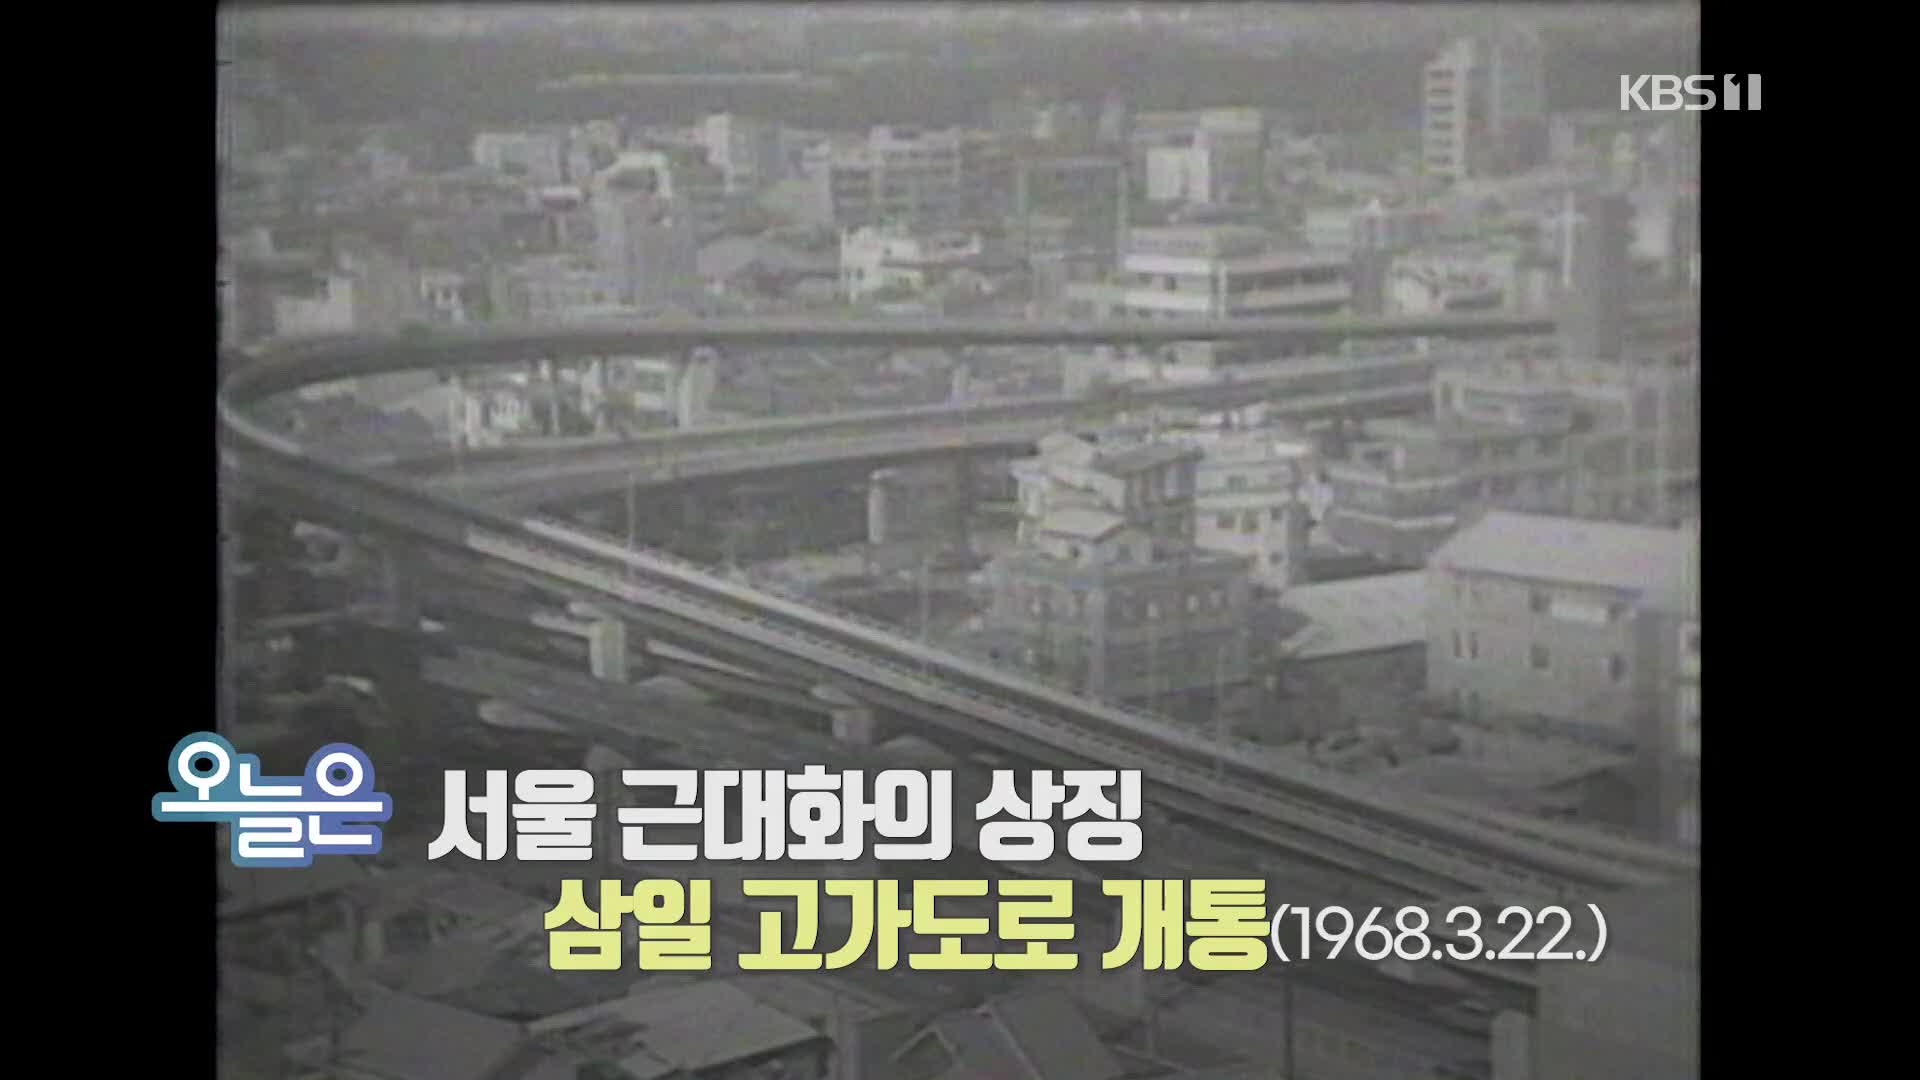 [오늘은] 서울 근대화의 상징 삼일 고가도로 개통 (1968.3.22.)